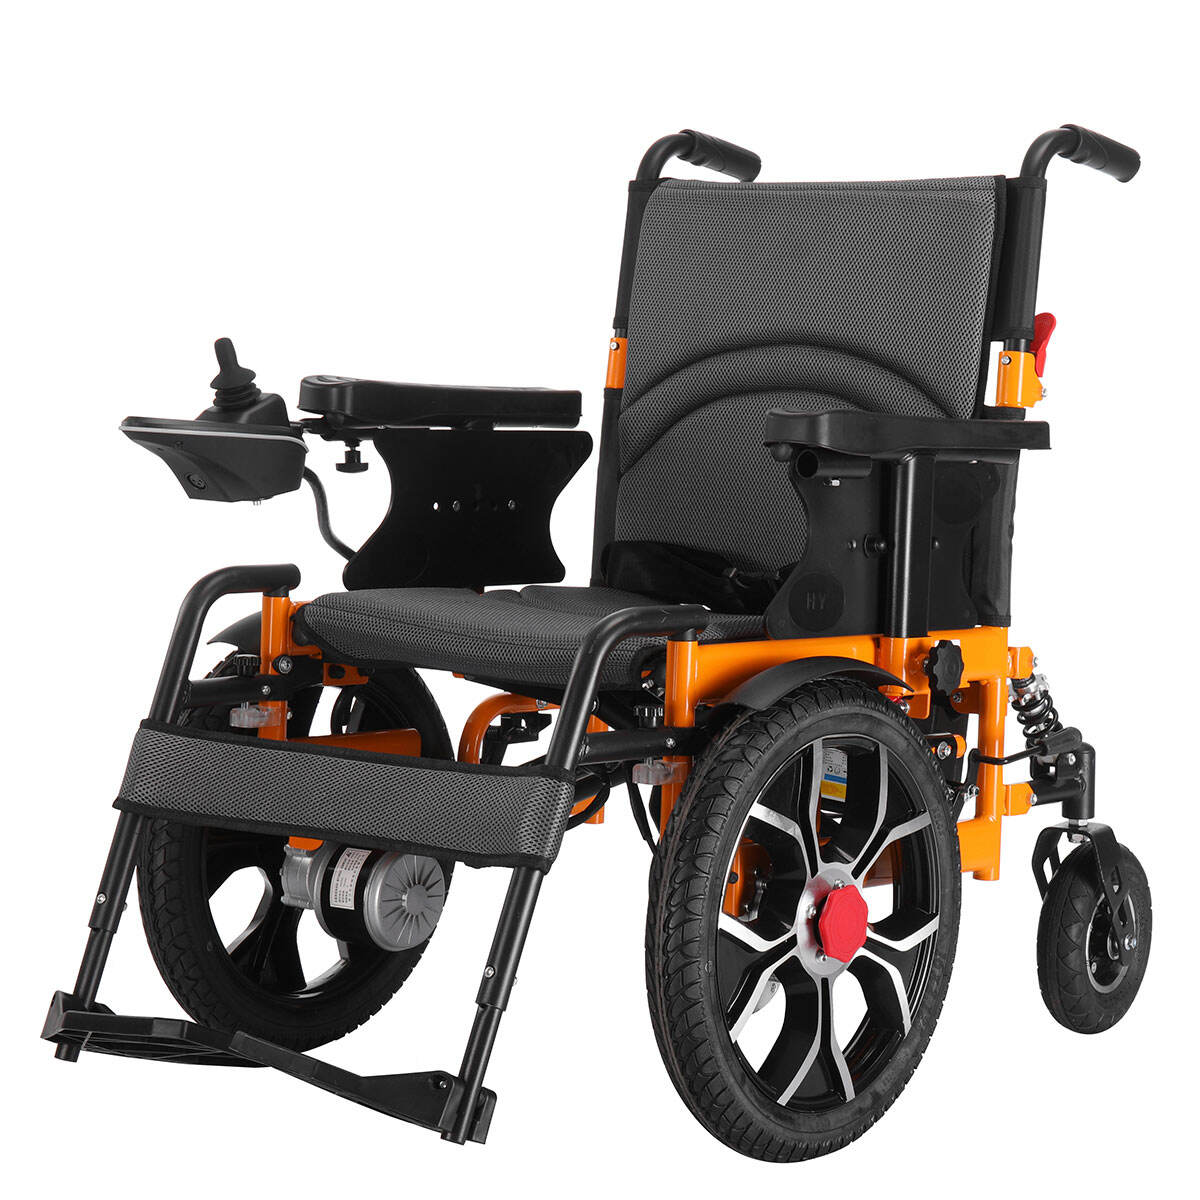 BC-ES600202 CE jóváhagyással rendelkező elektromos kerekesszék fogyatékkal élők számára